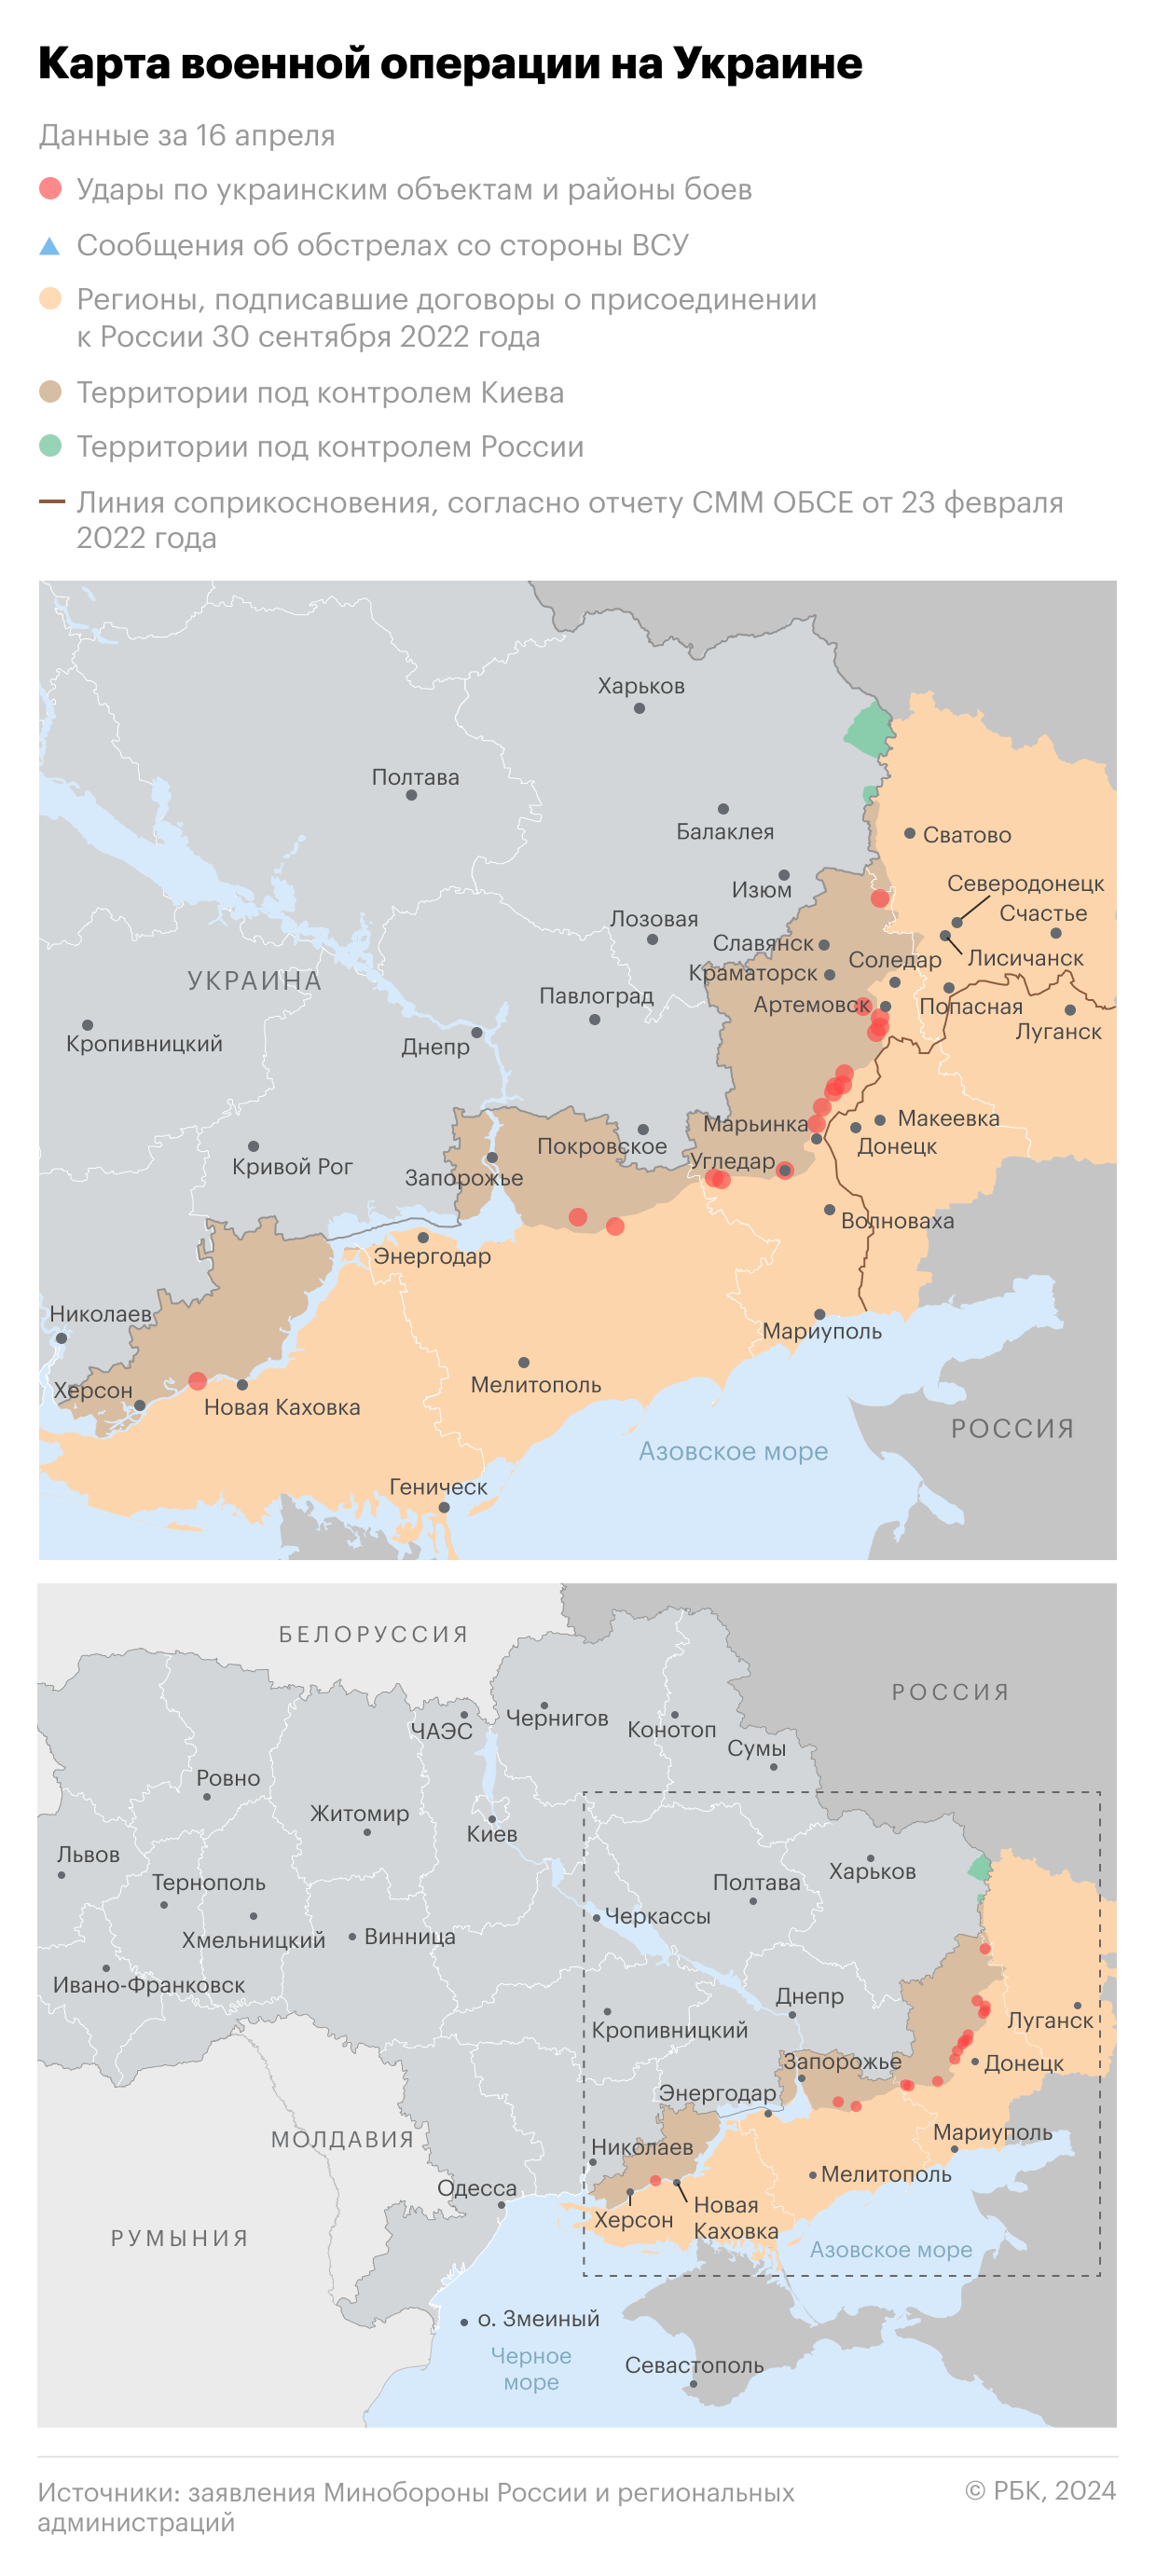 В МИД Украины назвали ультиматумы России угрозой для переговоров